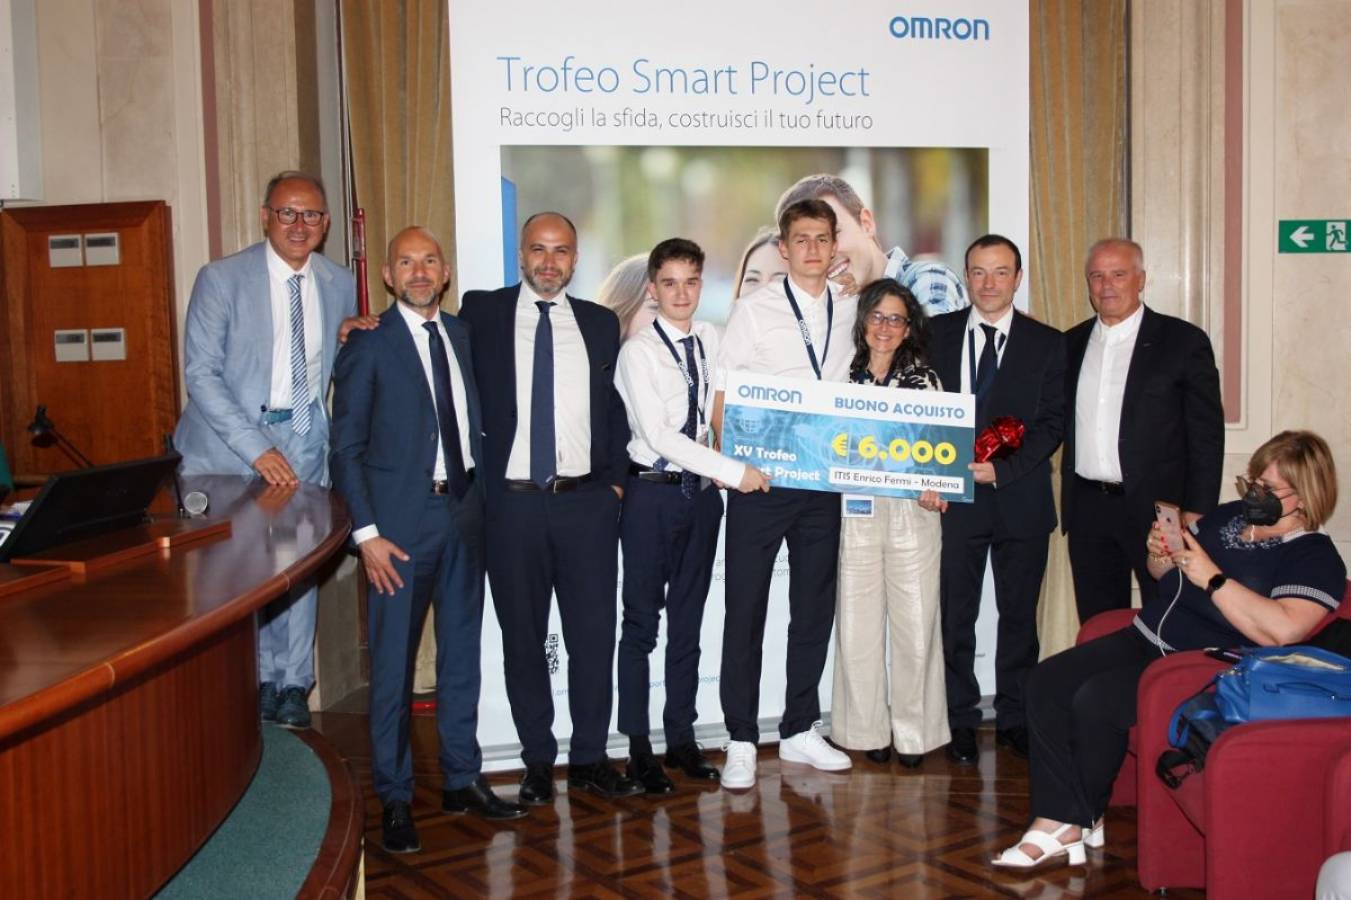 Andrea Bendin dell’ITIS Fermi di Modena miglior studente del Trofeo Smart Project Omron